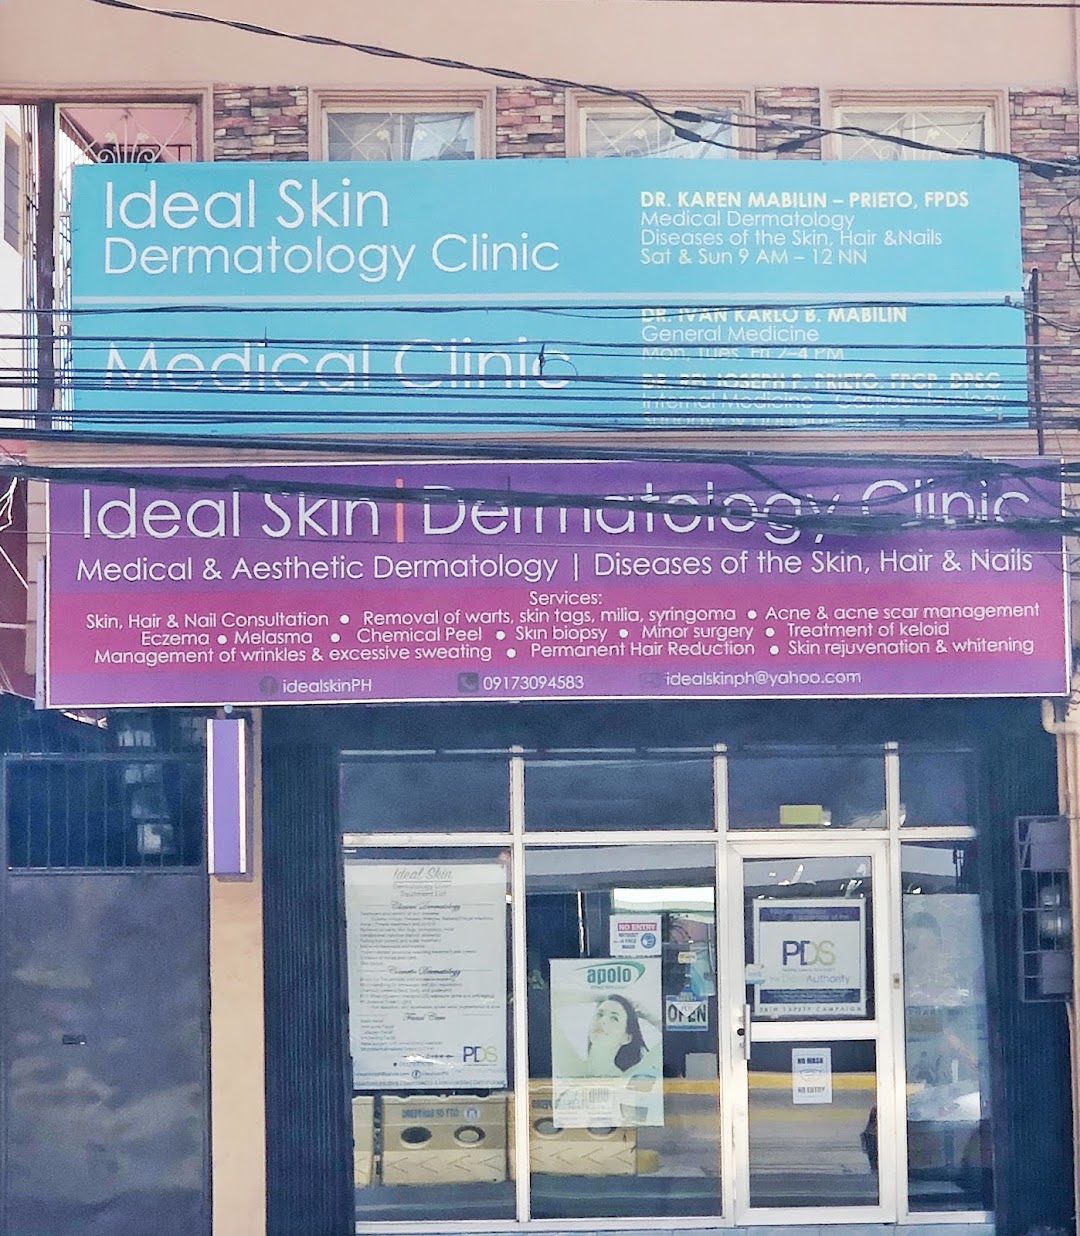 Ideal Skin Dermatology Clinic